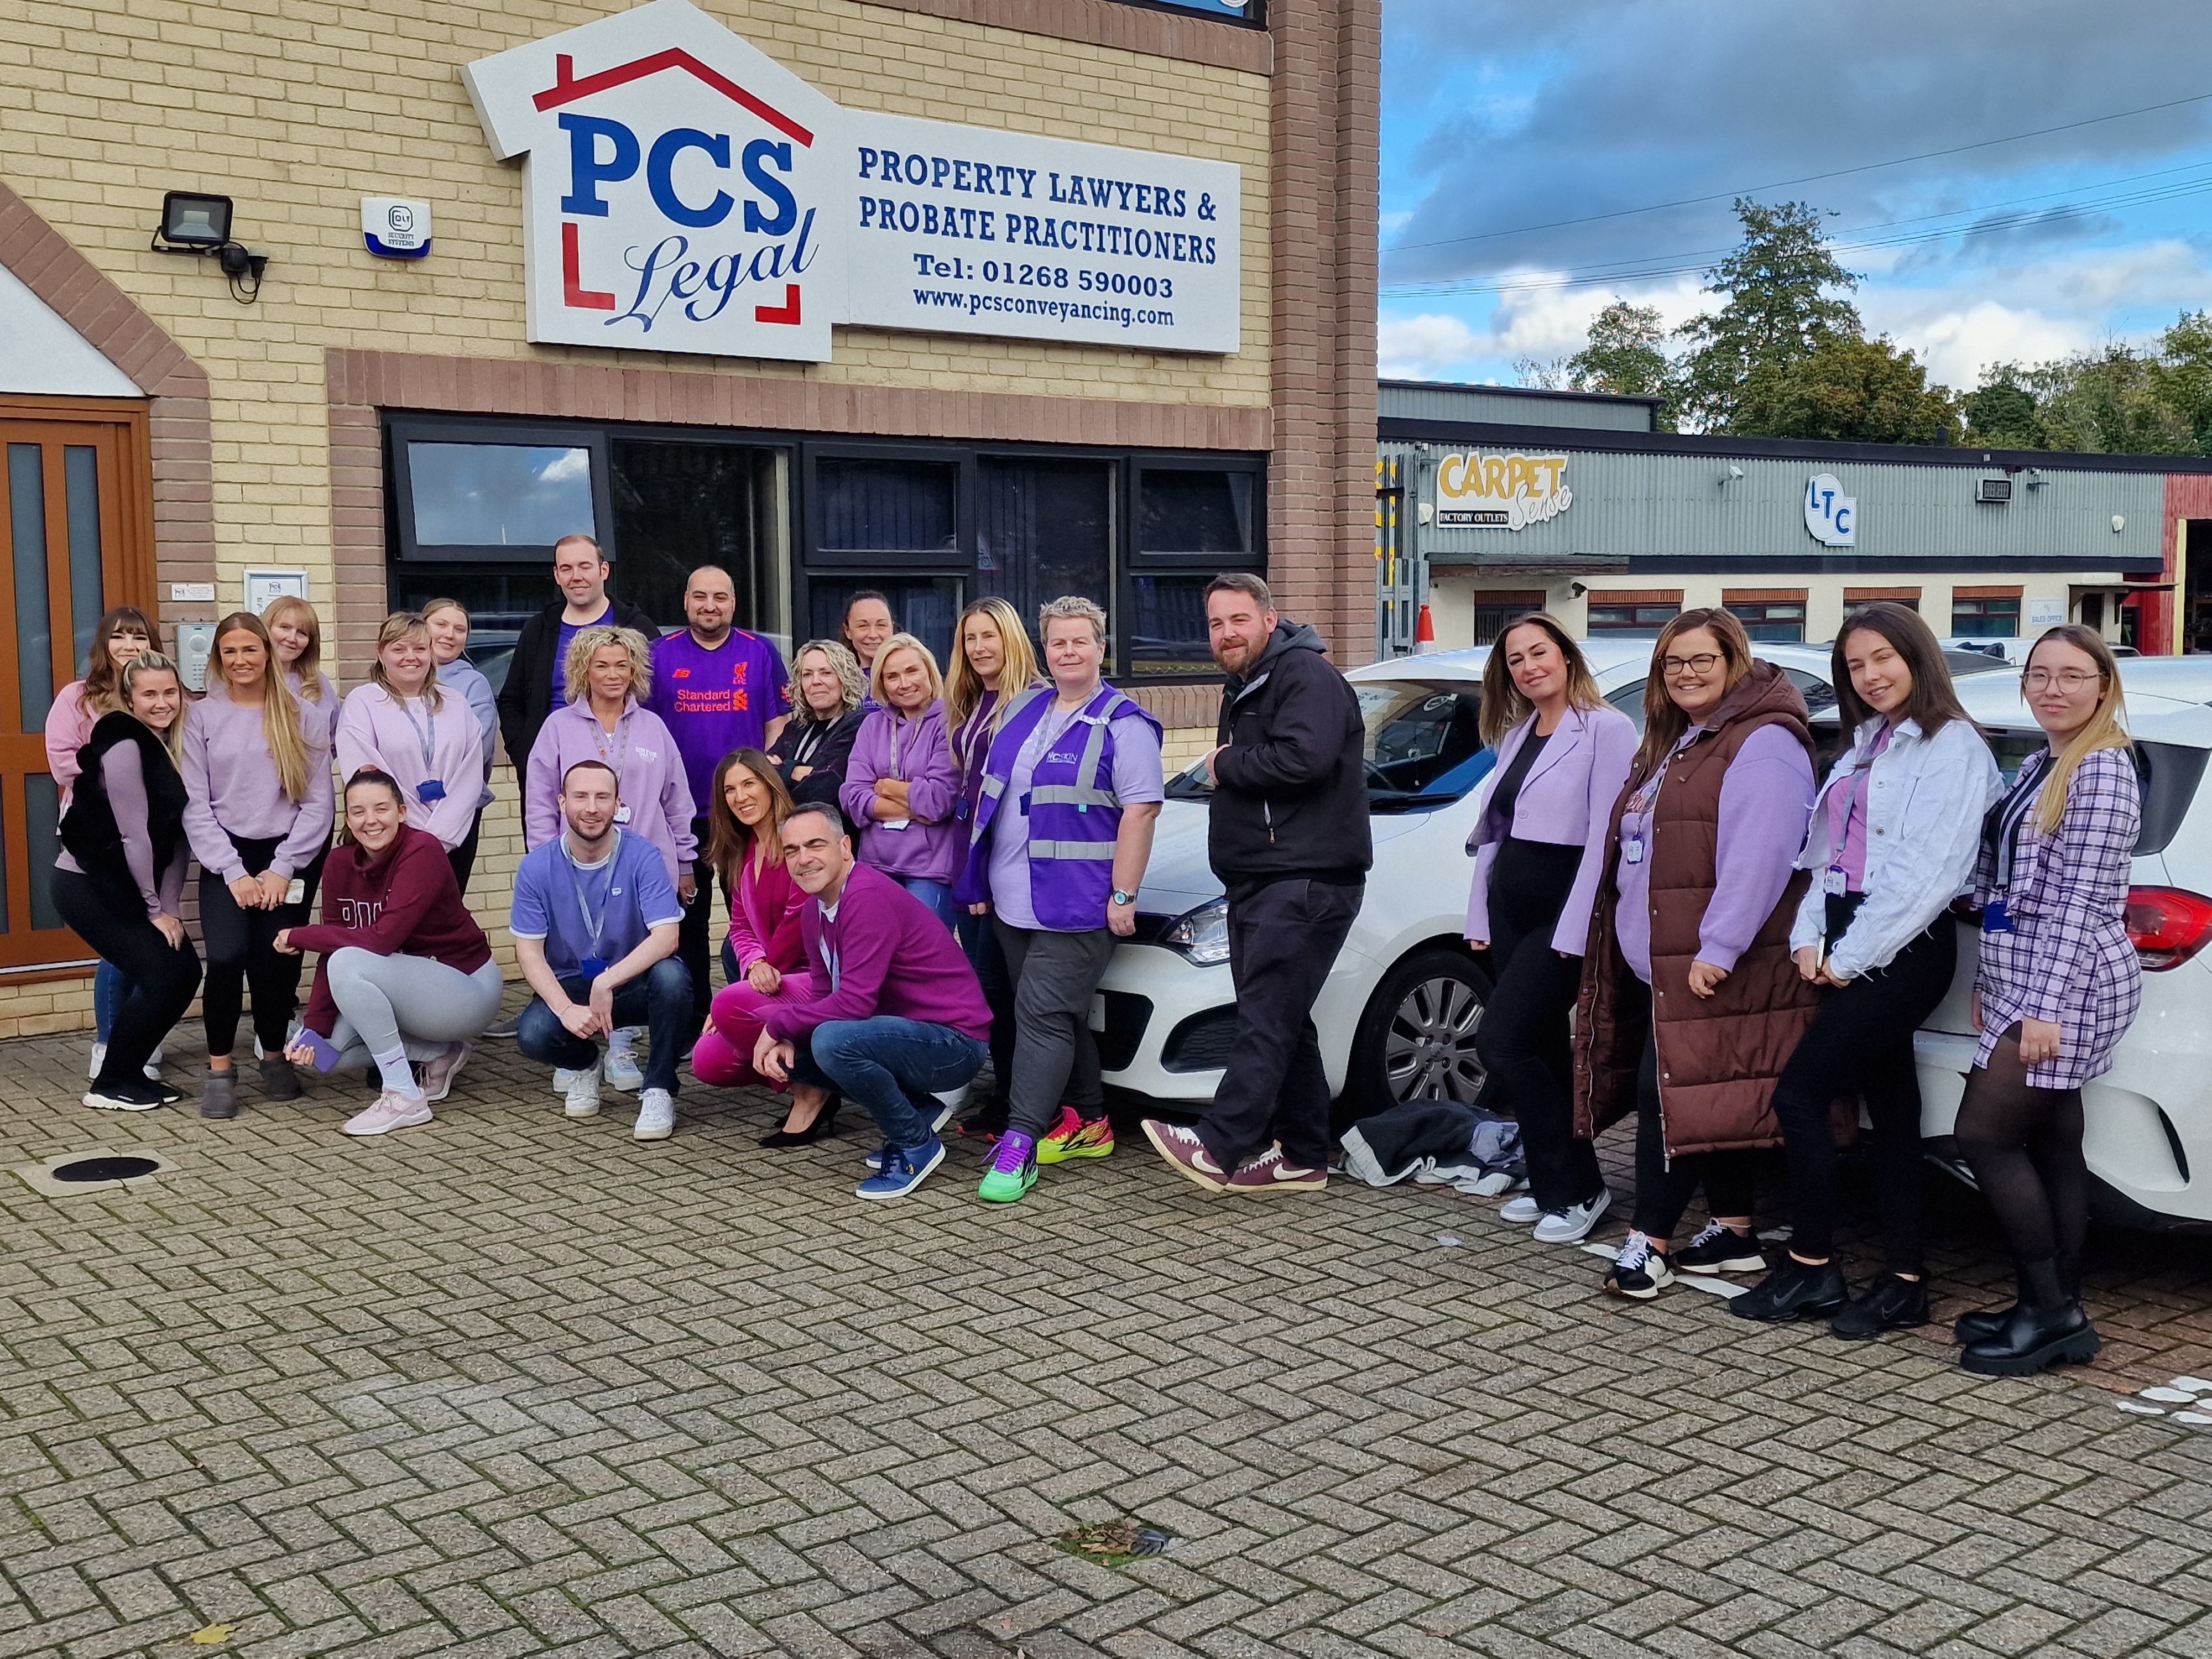 PCS Legal team dressed in Purple